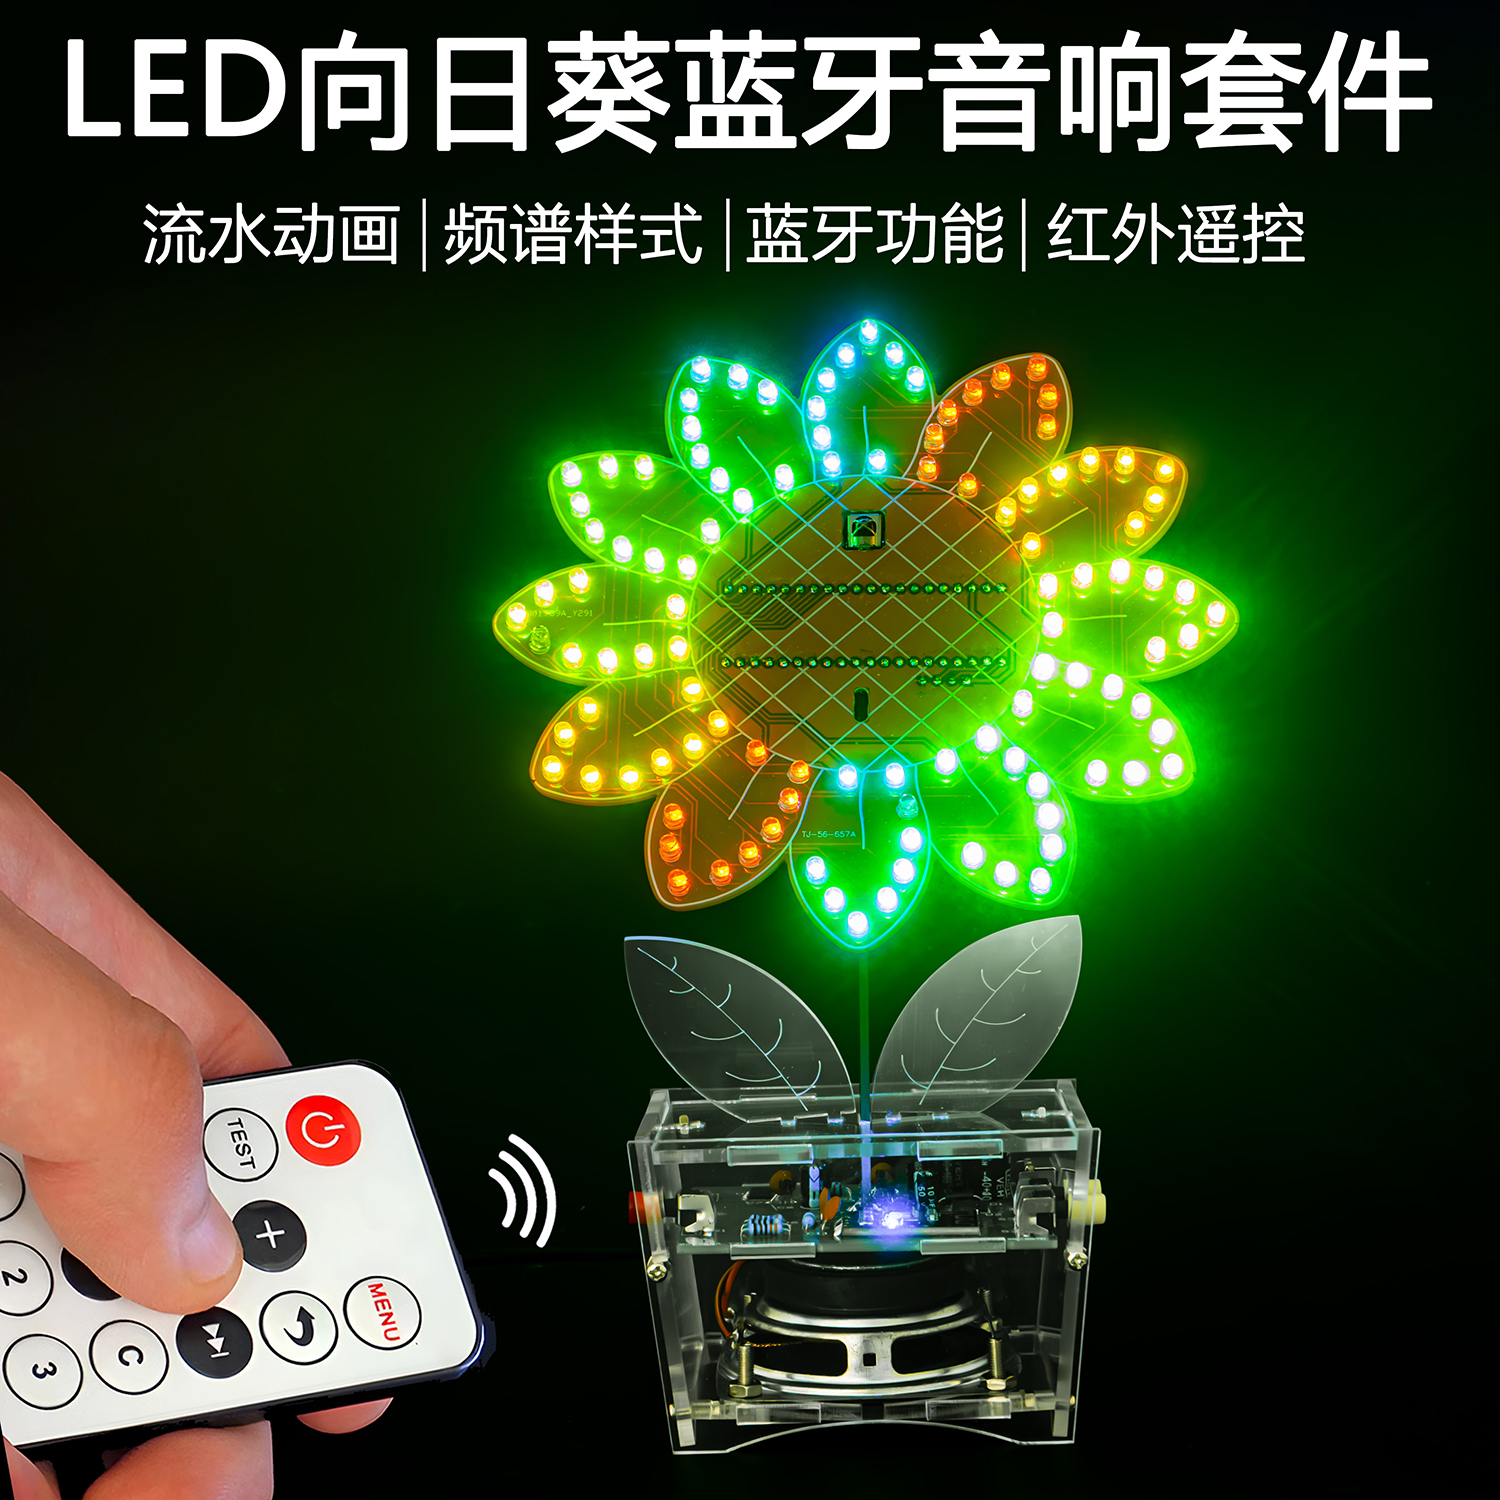 LED向日葵蓝牙音响套件动画模式音乐频谱创意趣味DIY电子制作散件